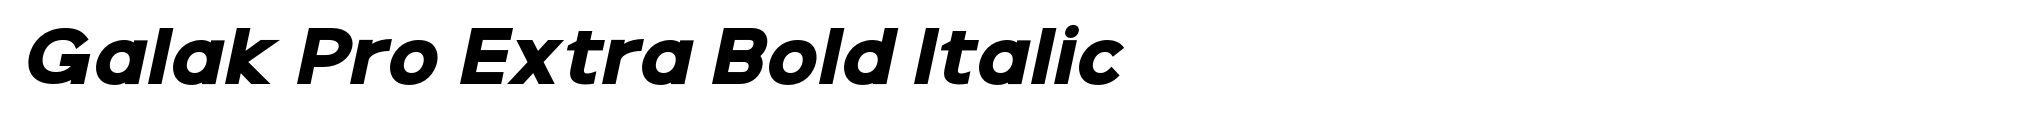 Galak Pro Extra Bold Italic image